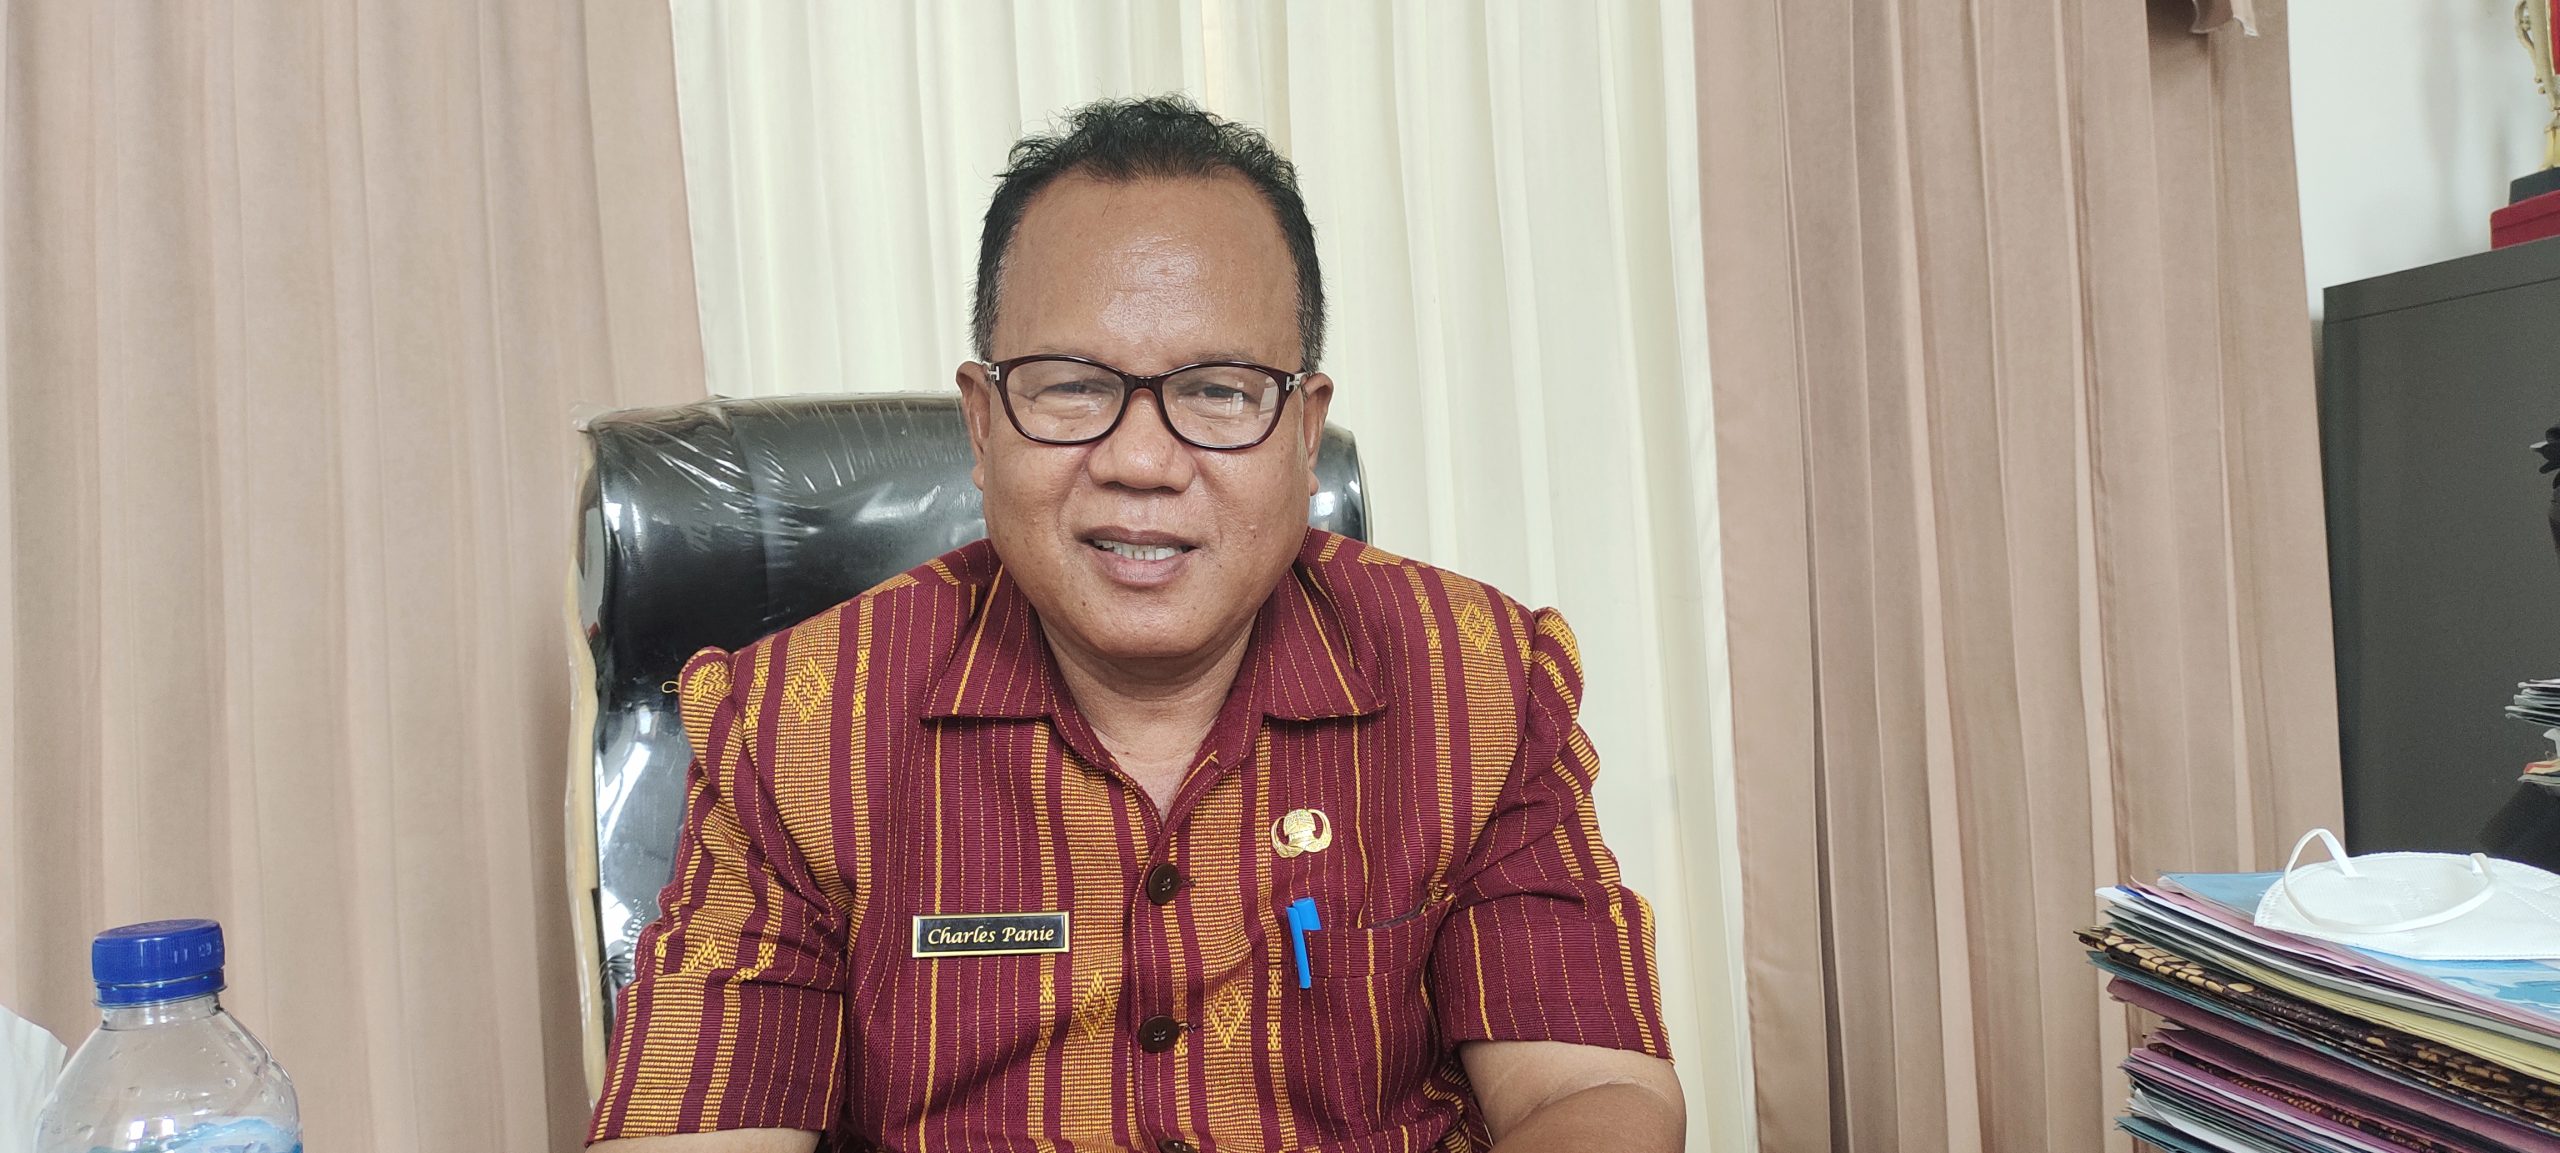 Kepala Dinas Pemberdayaan Masyarakat Desa Kabupaten Kupang Charles Panie.
